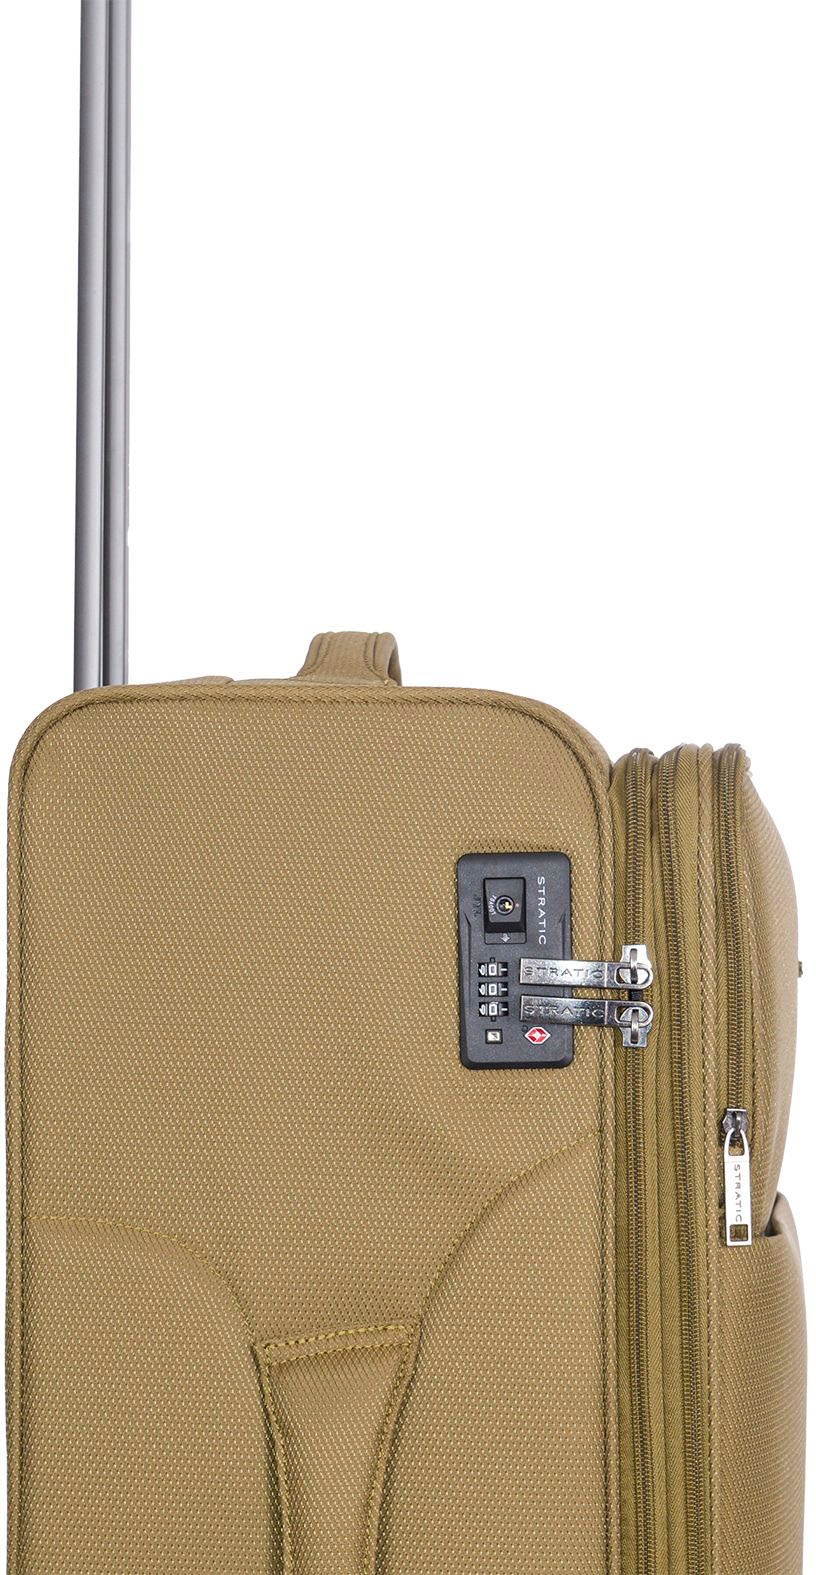 Stratic Weichgepäck-Trolley »Stratic Light + L, khaki«, 4 Rollen, Reisekoffer großer Koffer Aufgabegepäck TSA-Zahlenschloss